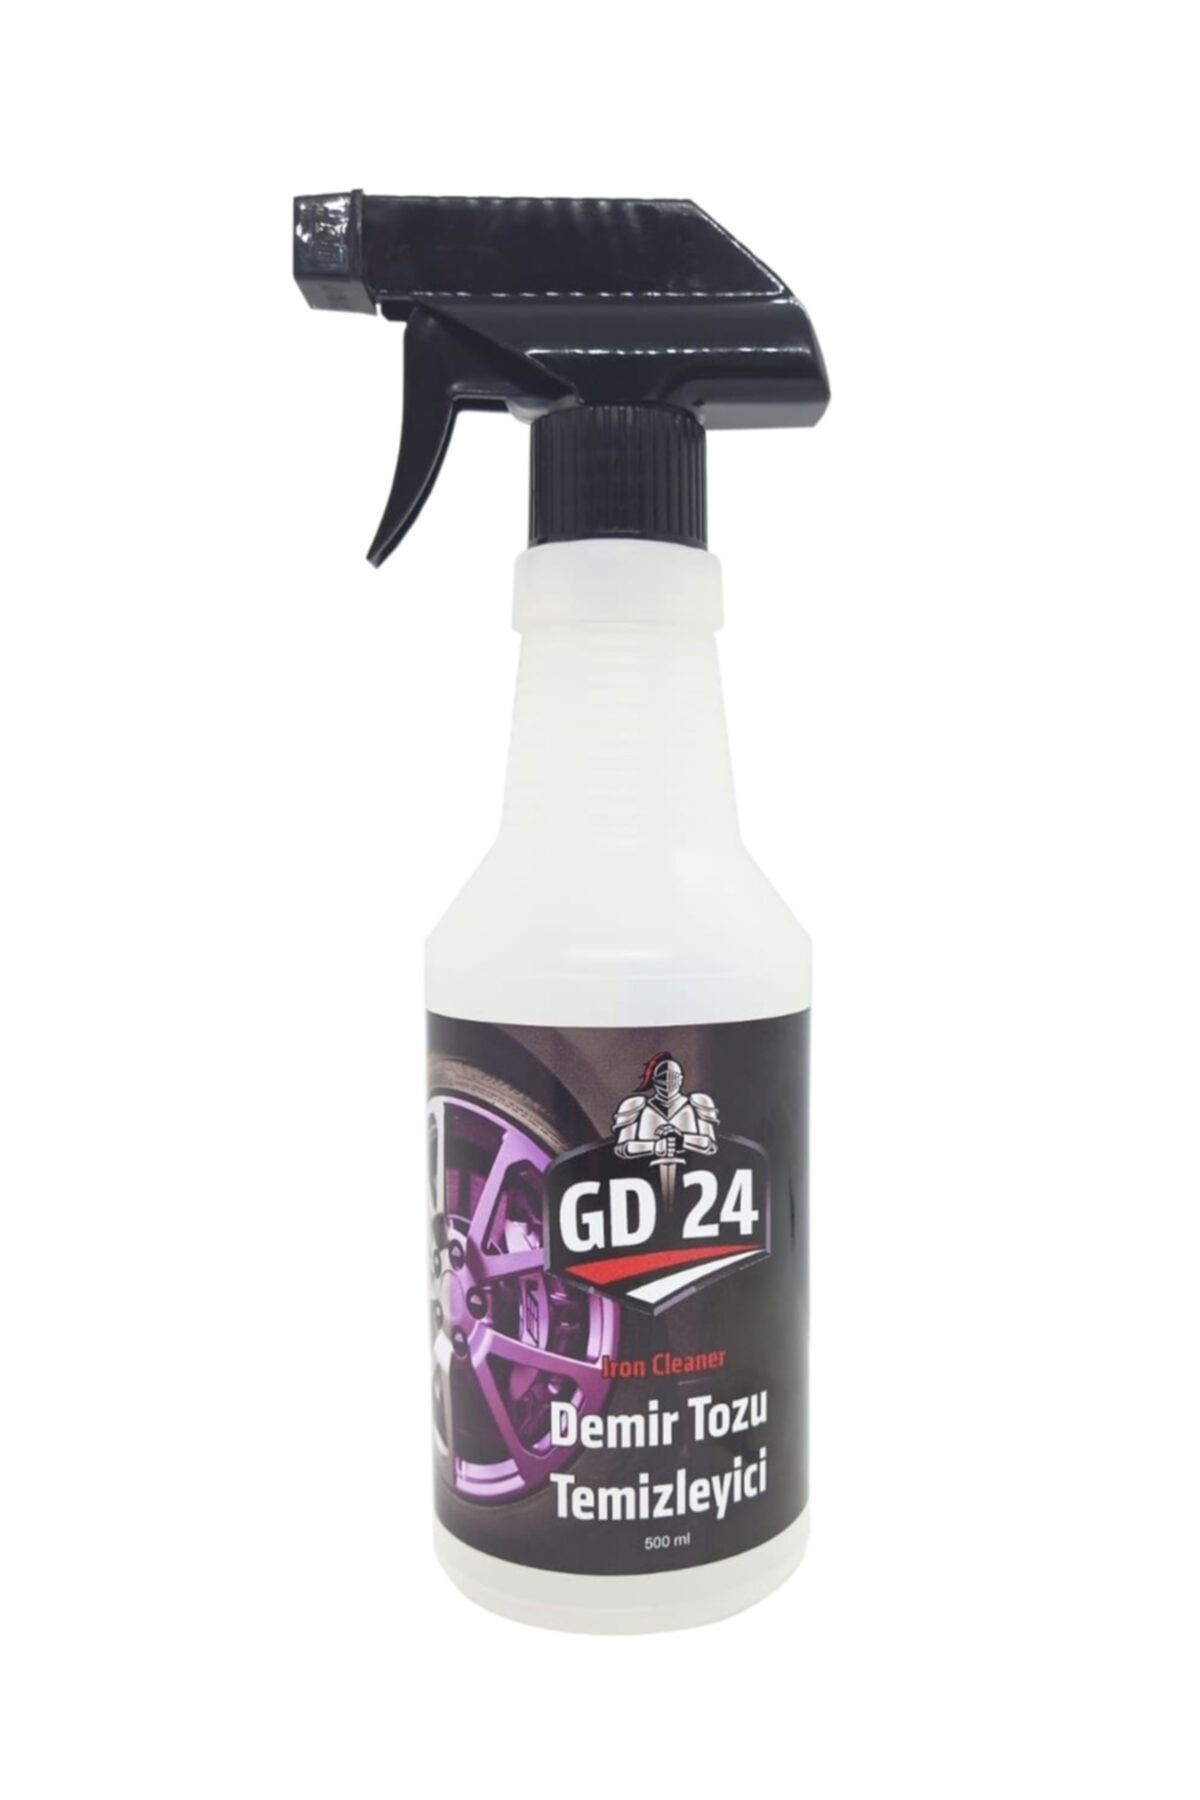 GD 24 Gd24 Demir Tozu Temizleyici – 500 Ml